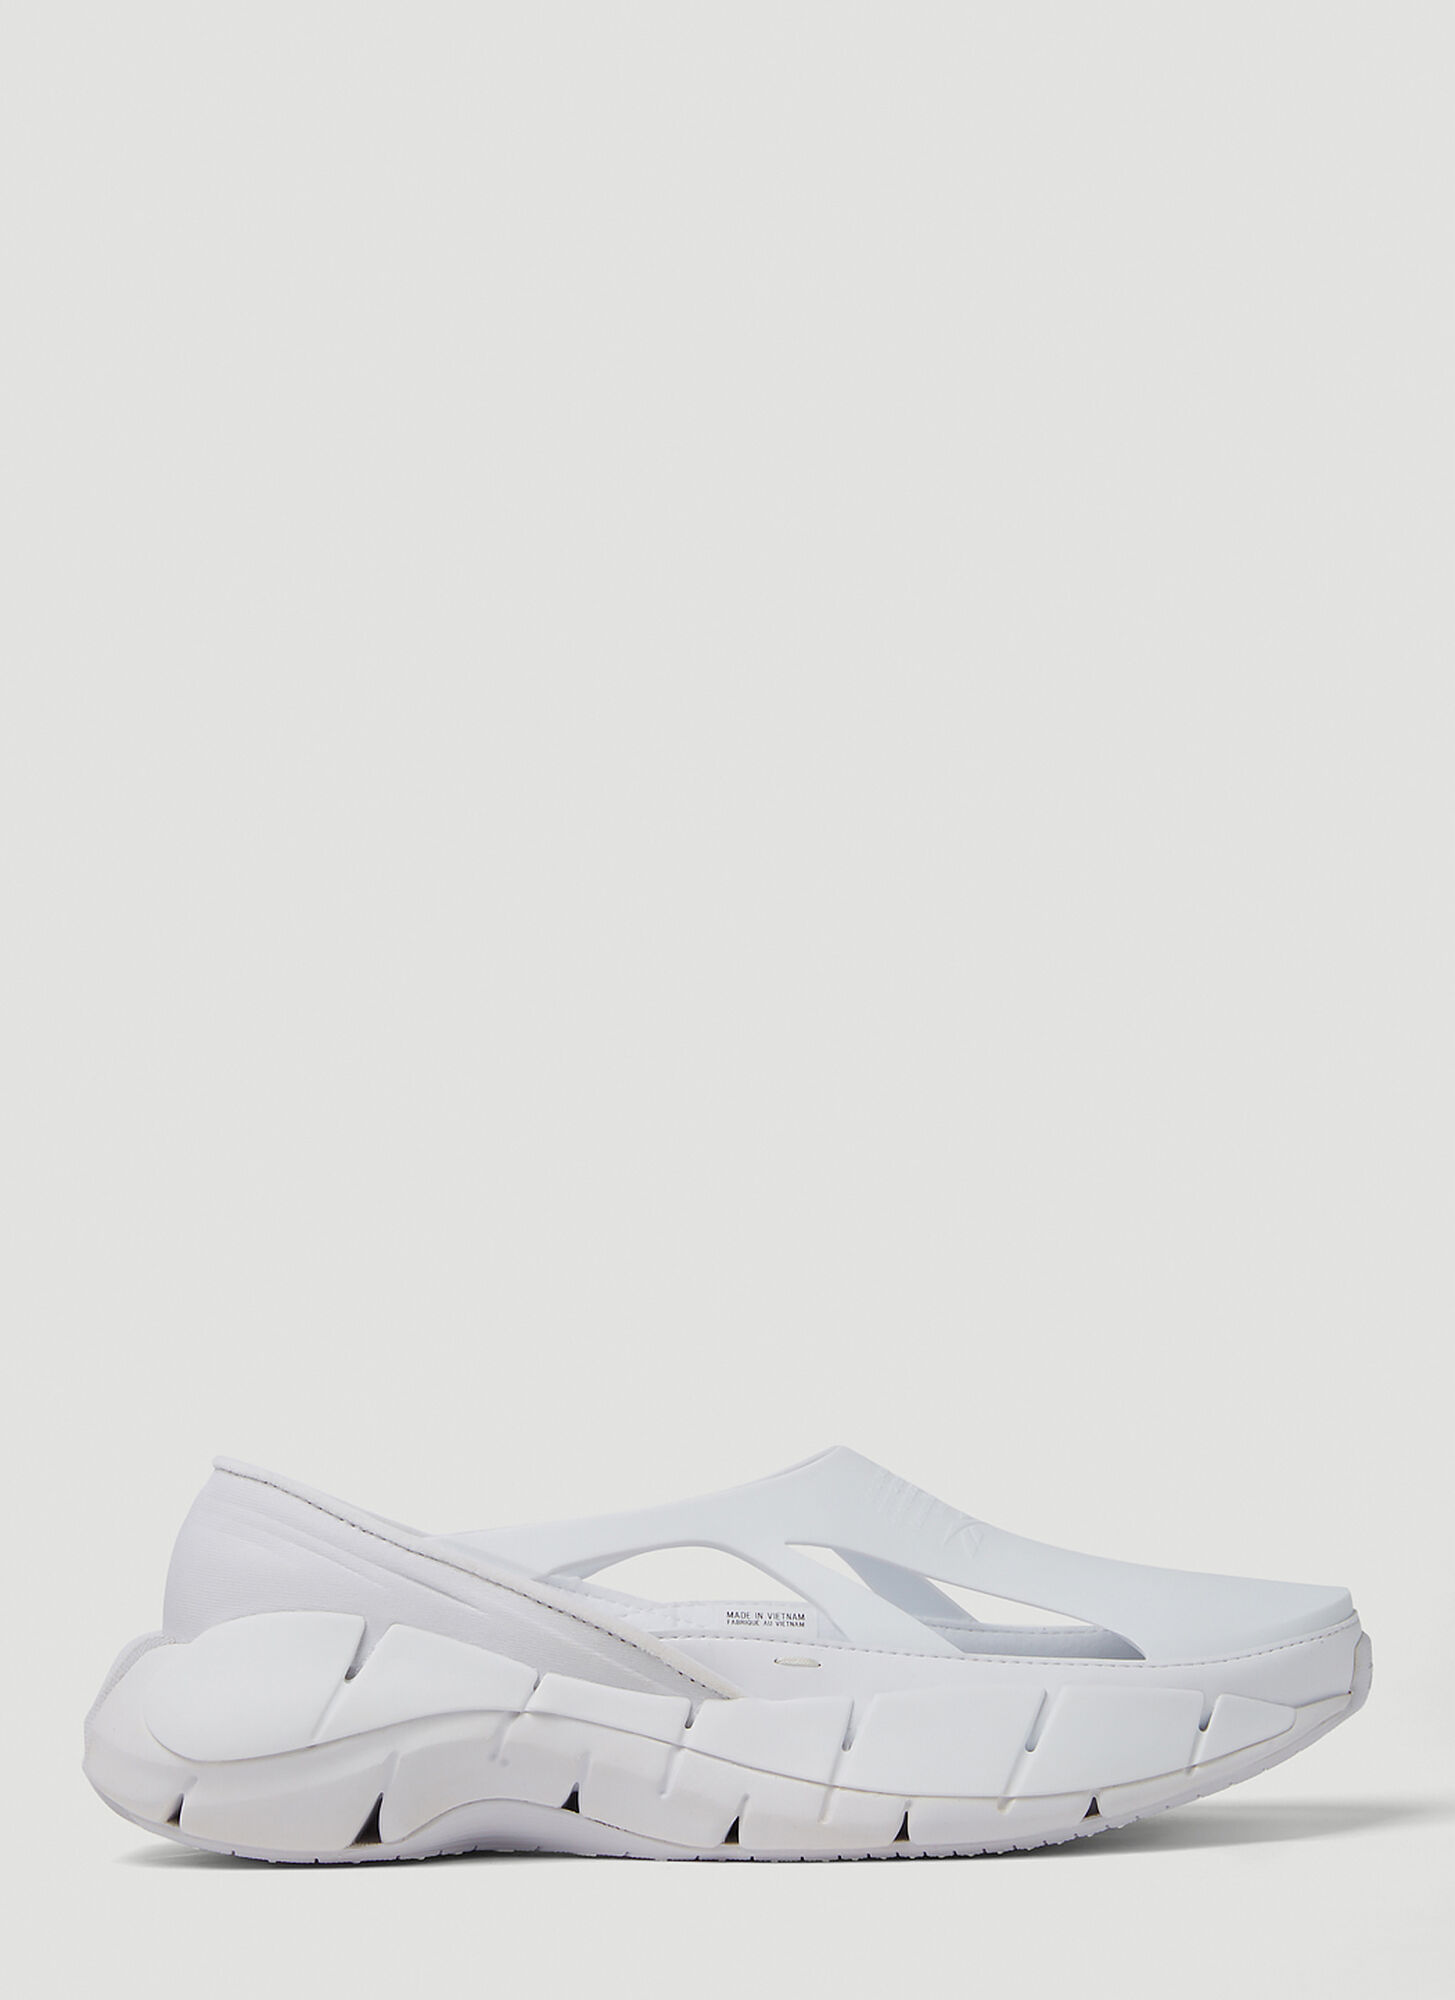 Shop Maison Margiela X Reebok Tier 1 Croafer Sneakers In White